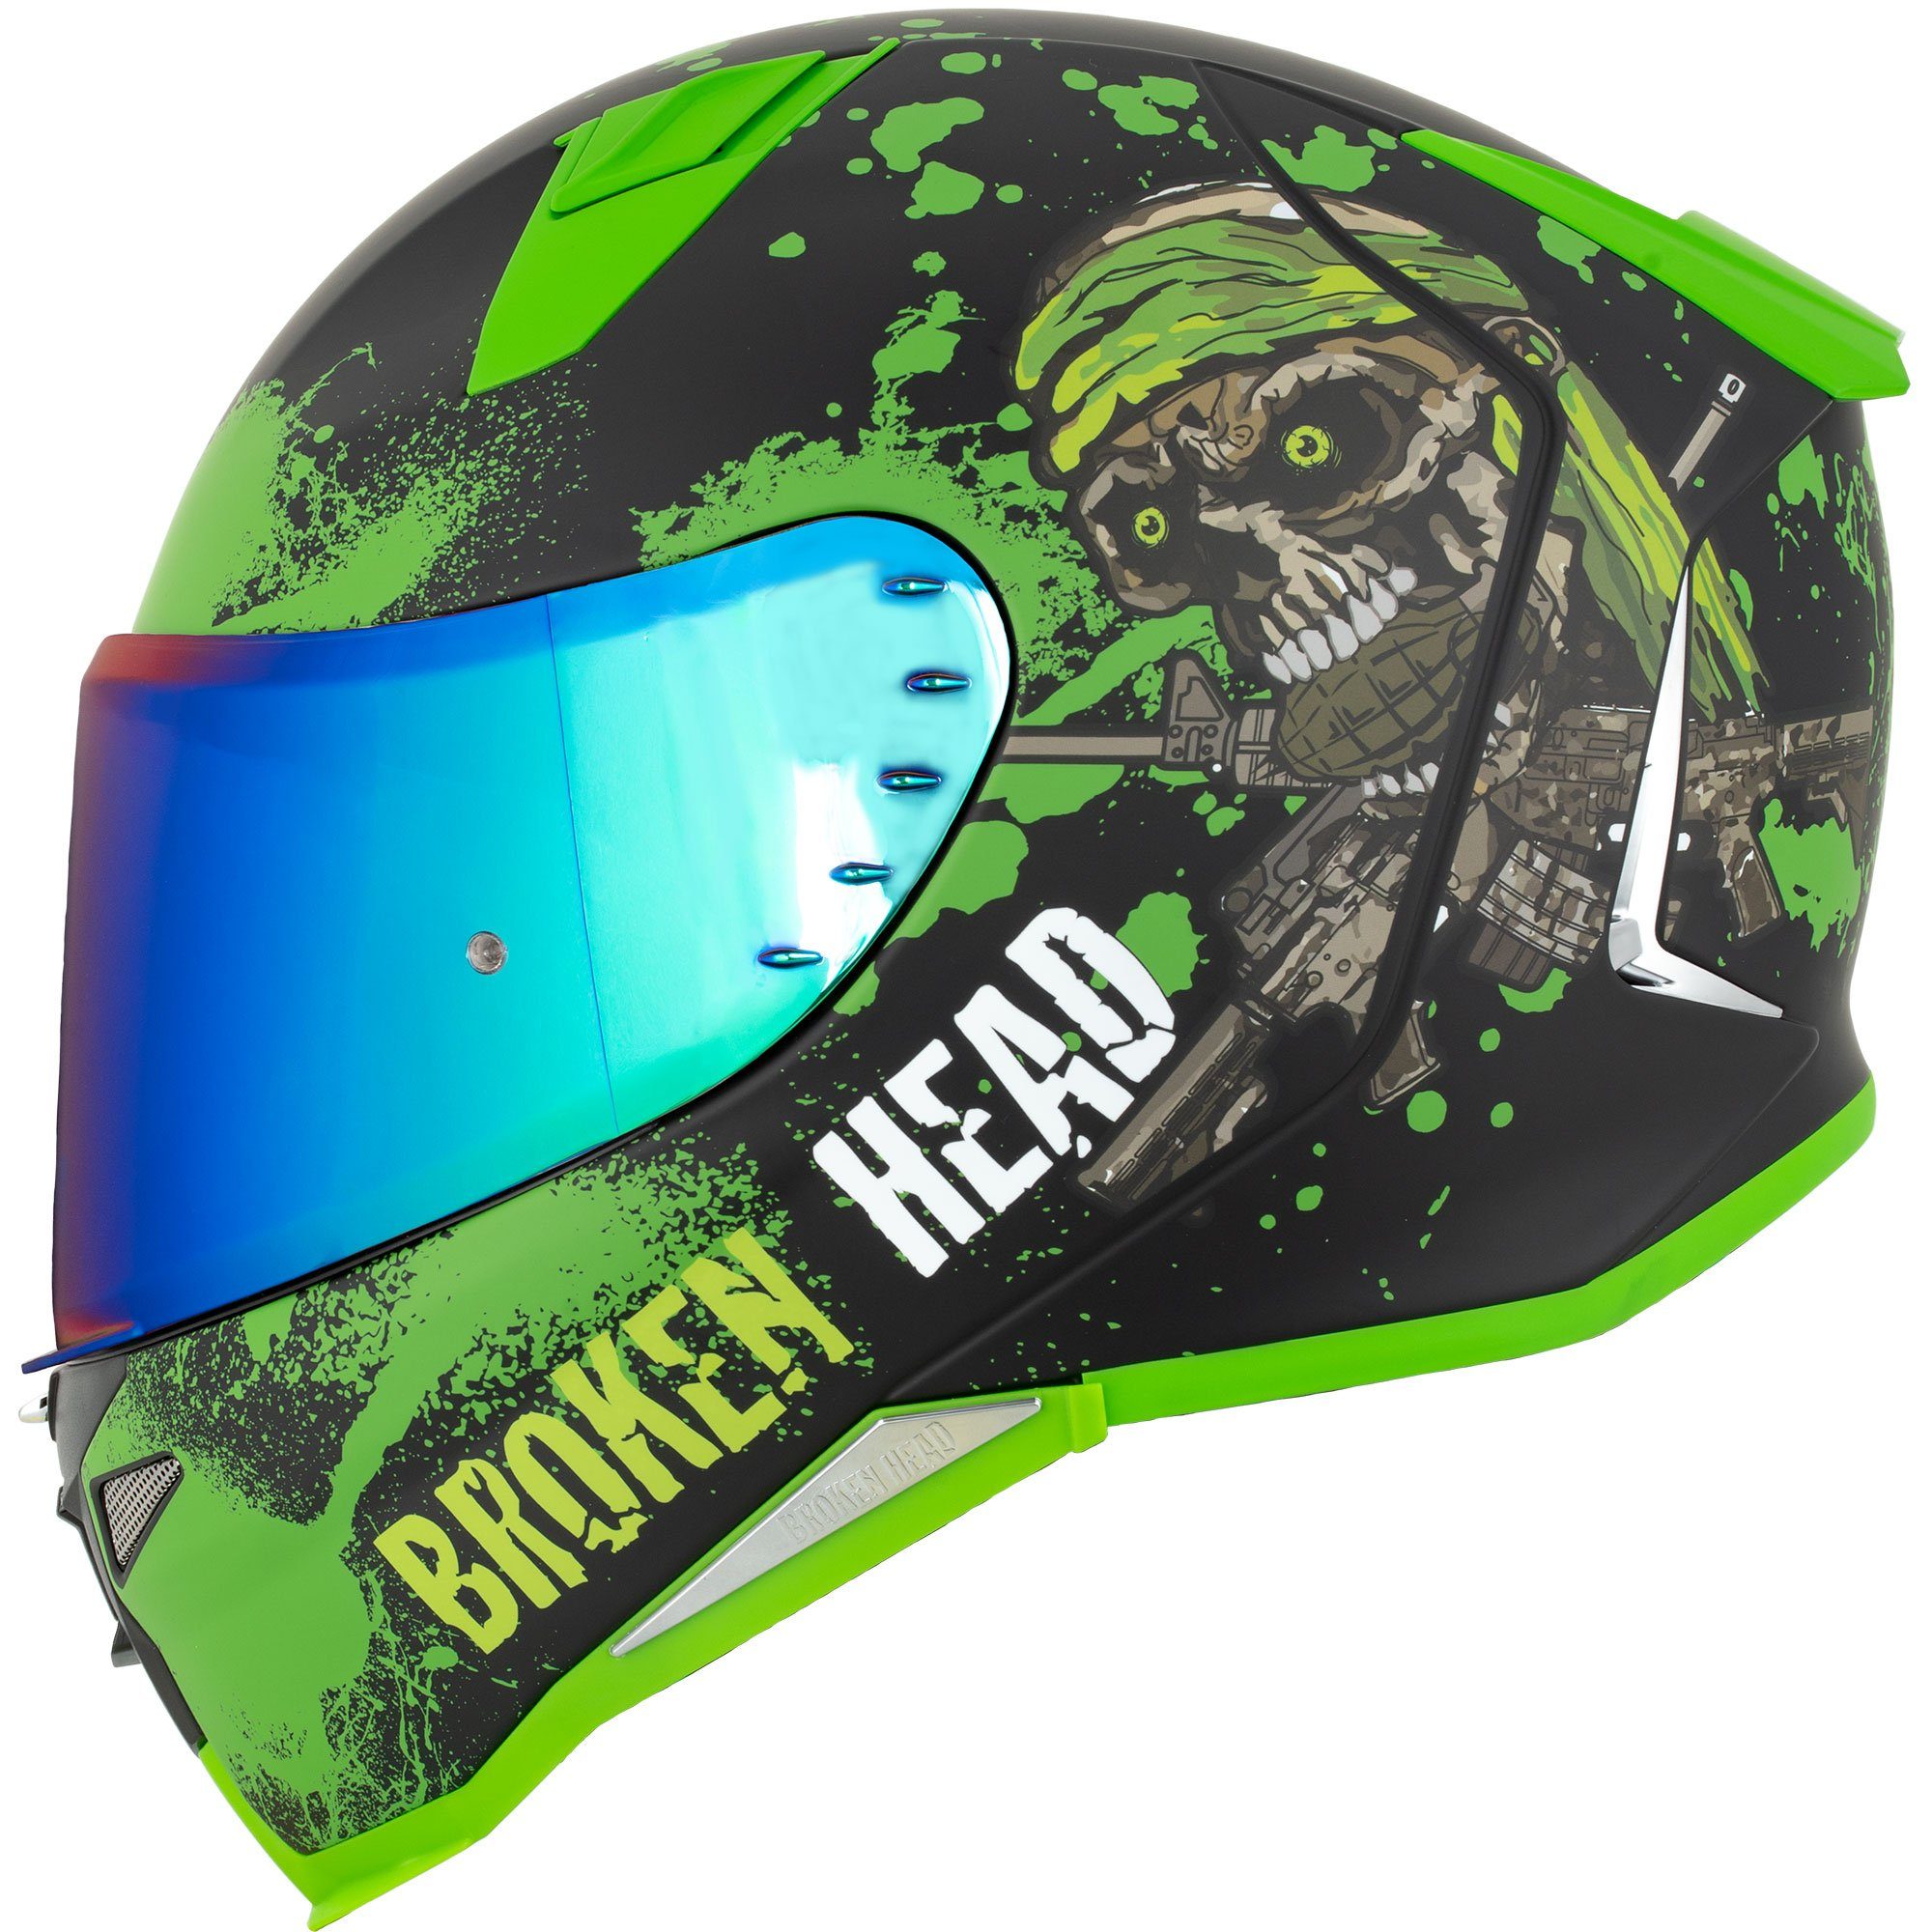 Broken Head Motorradhelm »Broken Head Jack S. V2 Pro Grün« (mit klarem und  grün verspiegeltem Visier), inklusive 2 Visieren, Pinlock vorbereitet